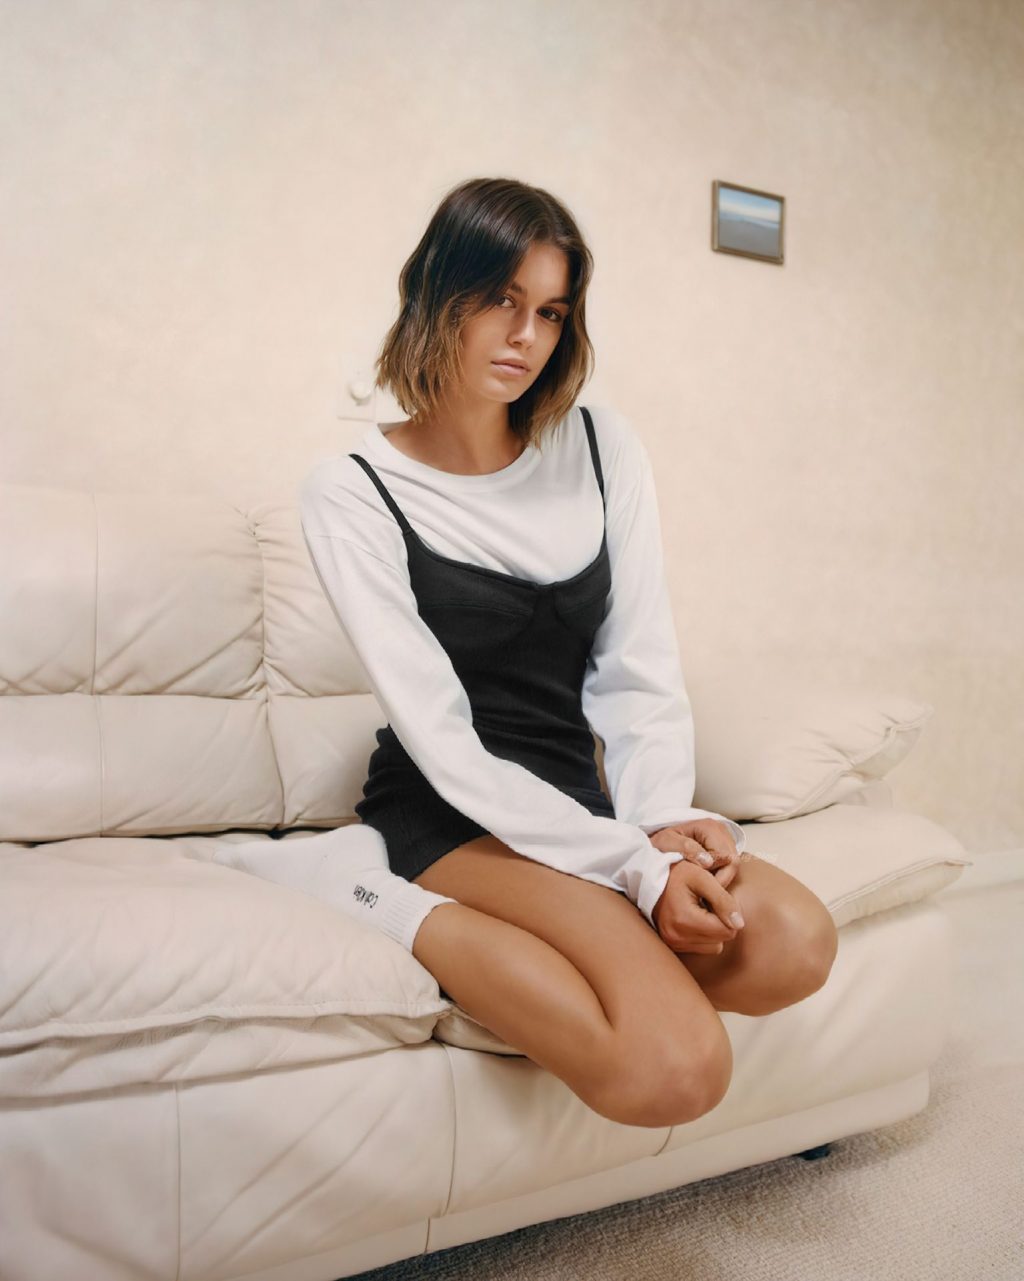 Kaia Gerber Promotes a New Calvin Klein Campaign (21 Photos + Video)